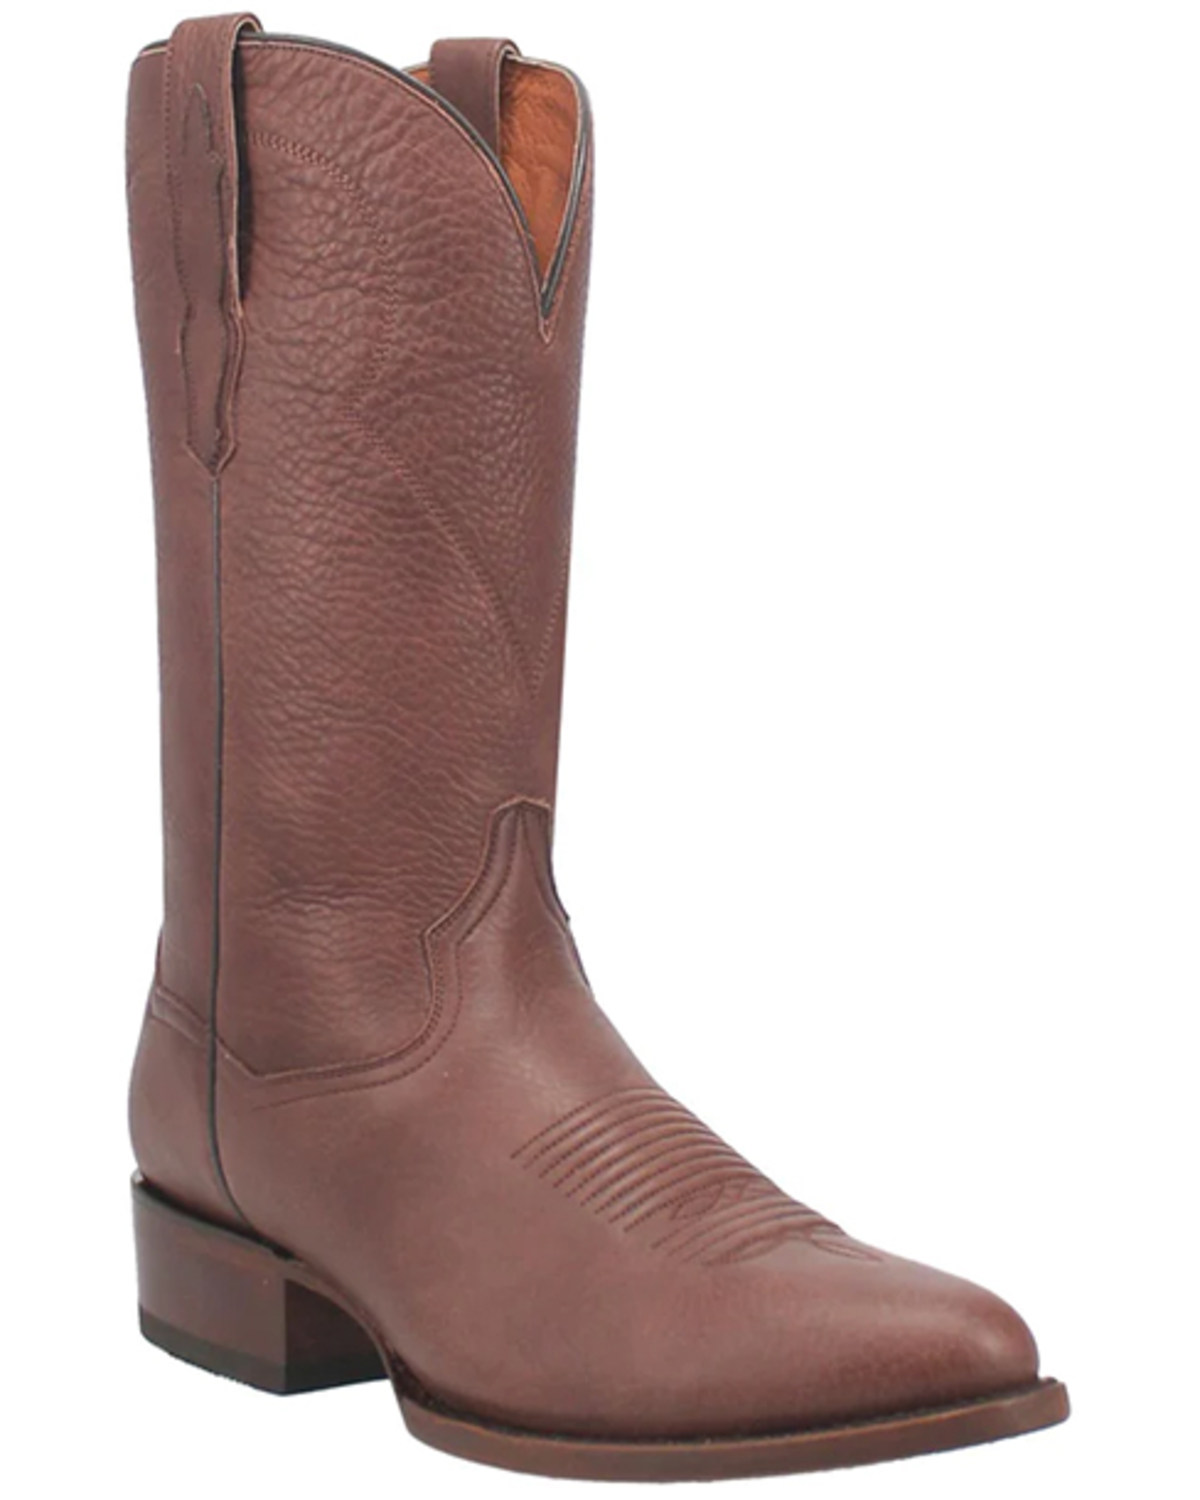 Dan Post Men's Pike Western Boots - Medium Toe